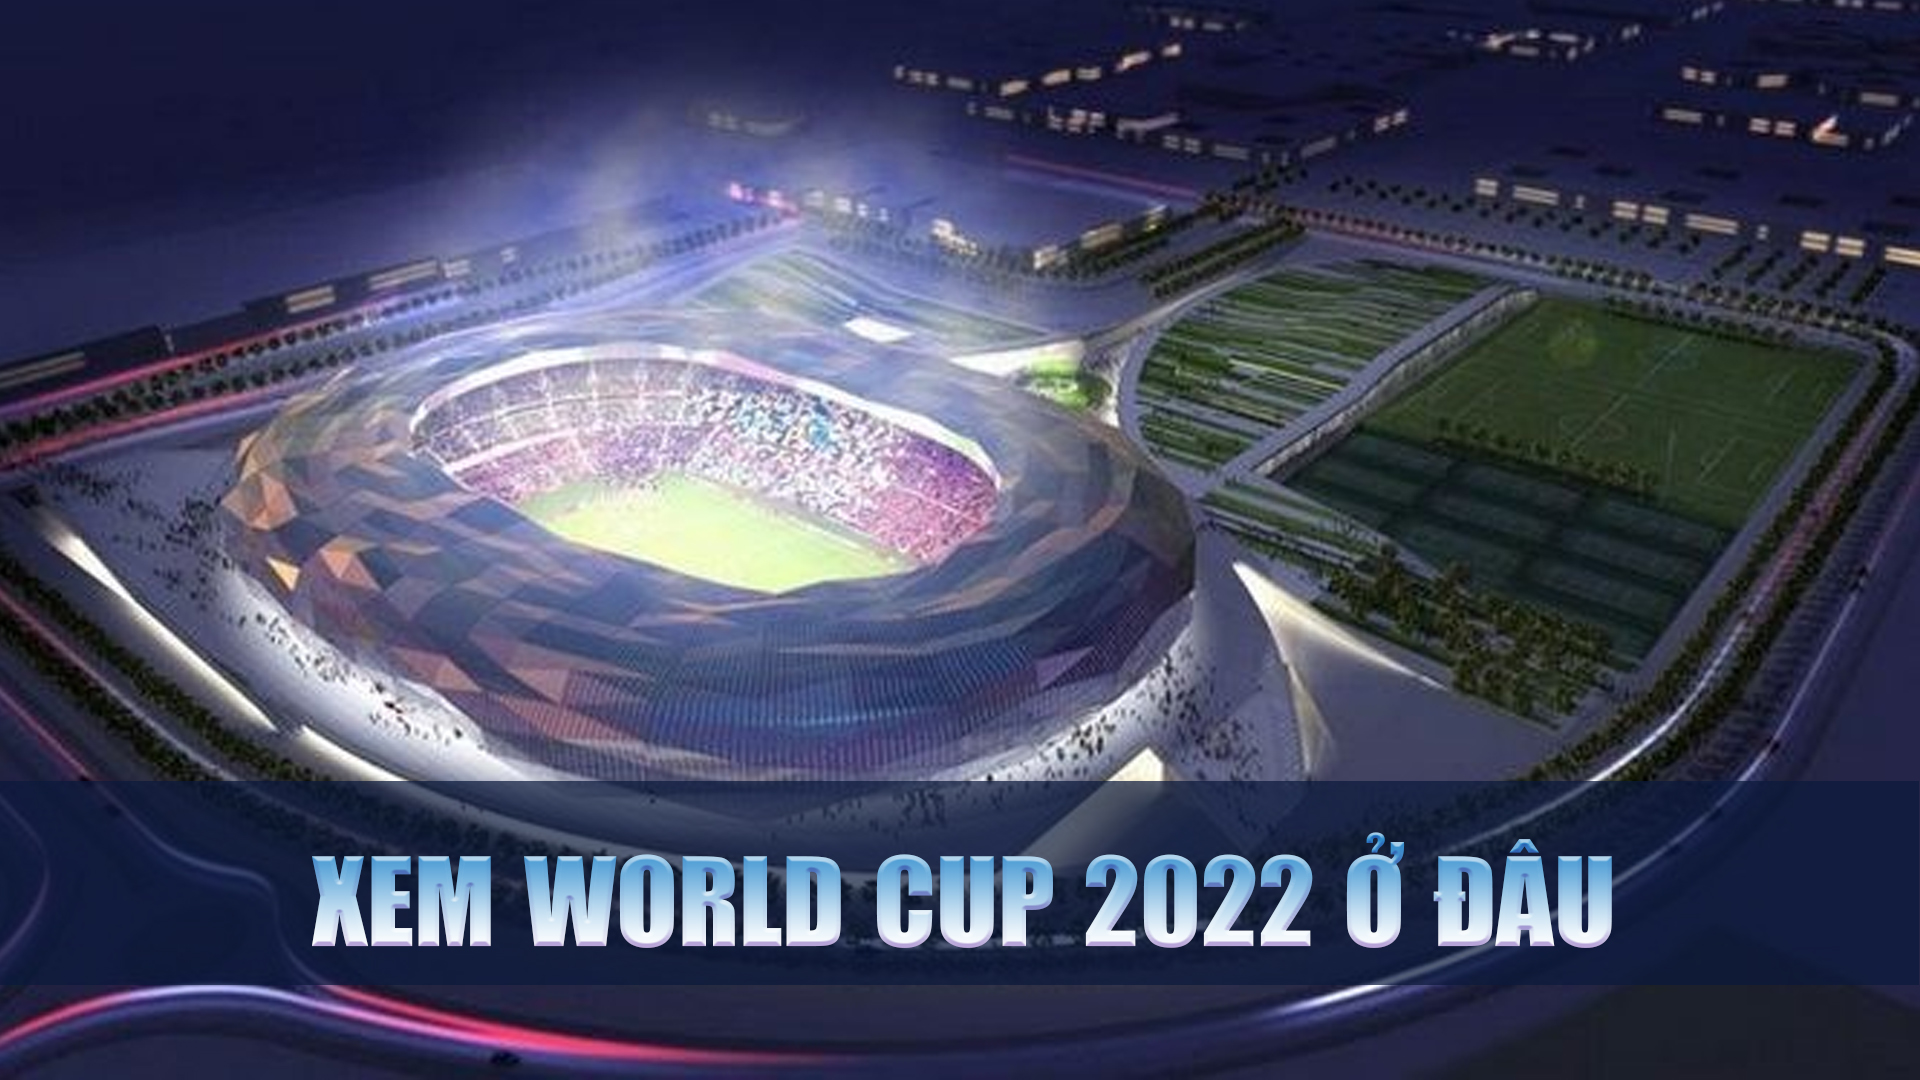 Xem world cup 2022 ở đâu 01